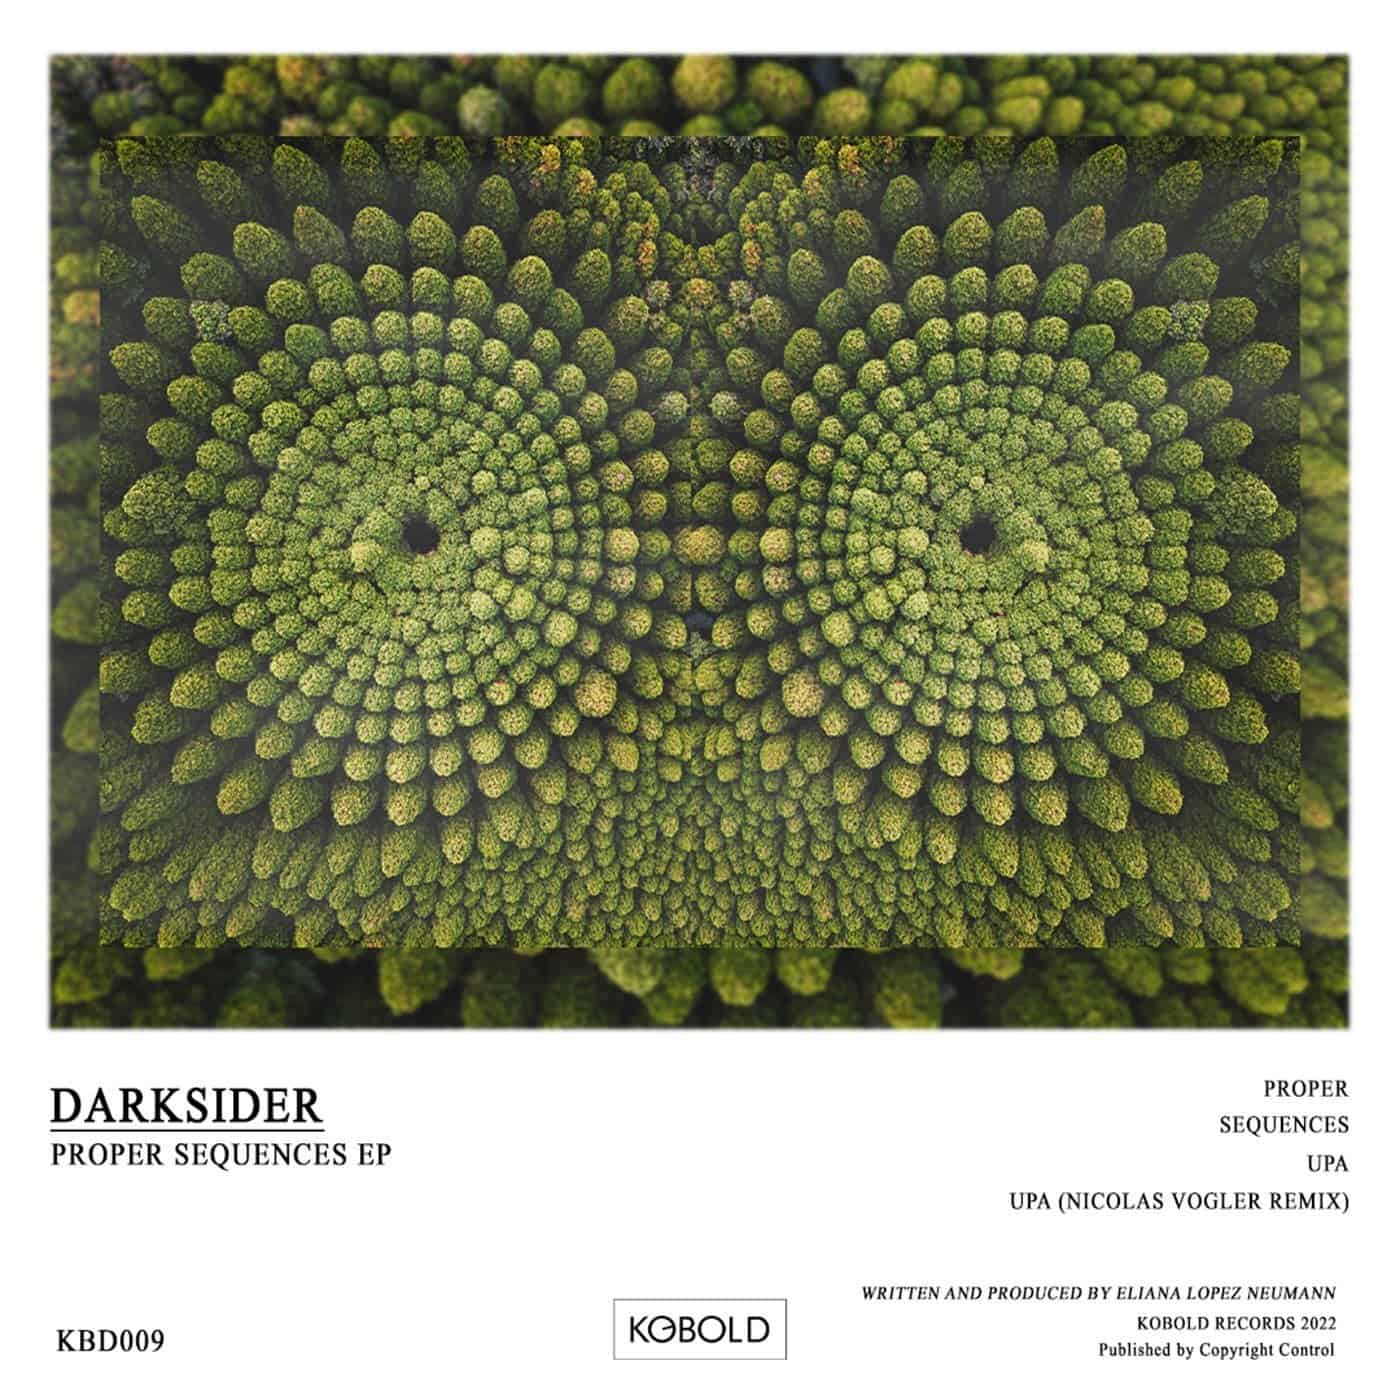 image cover: Darksider (ARG) - Proper Sequences / KBD009